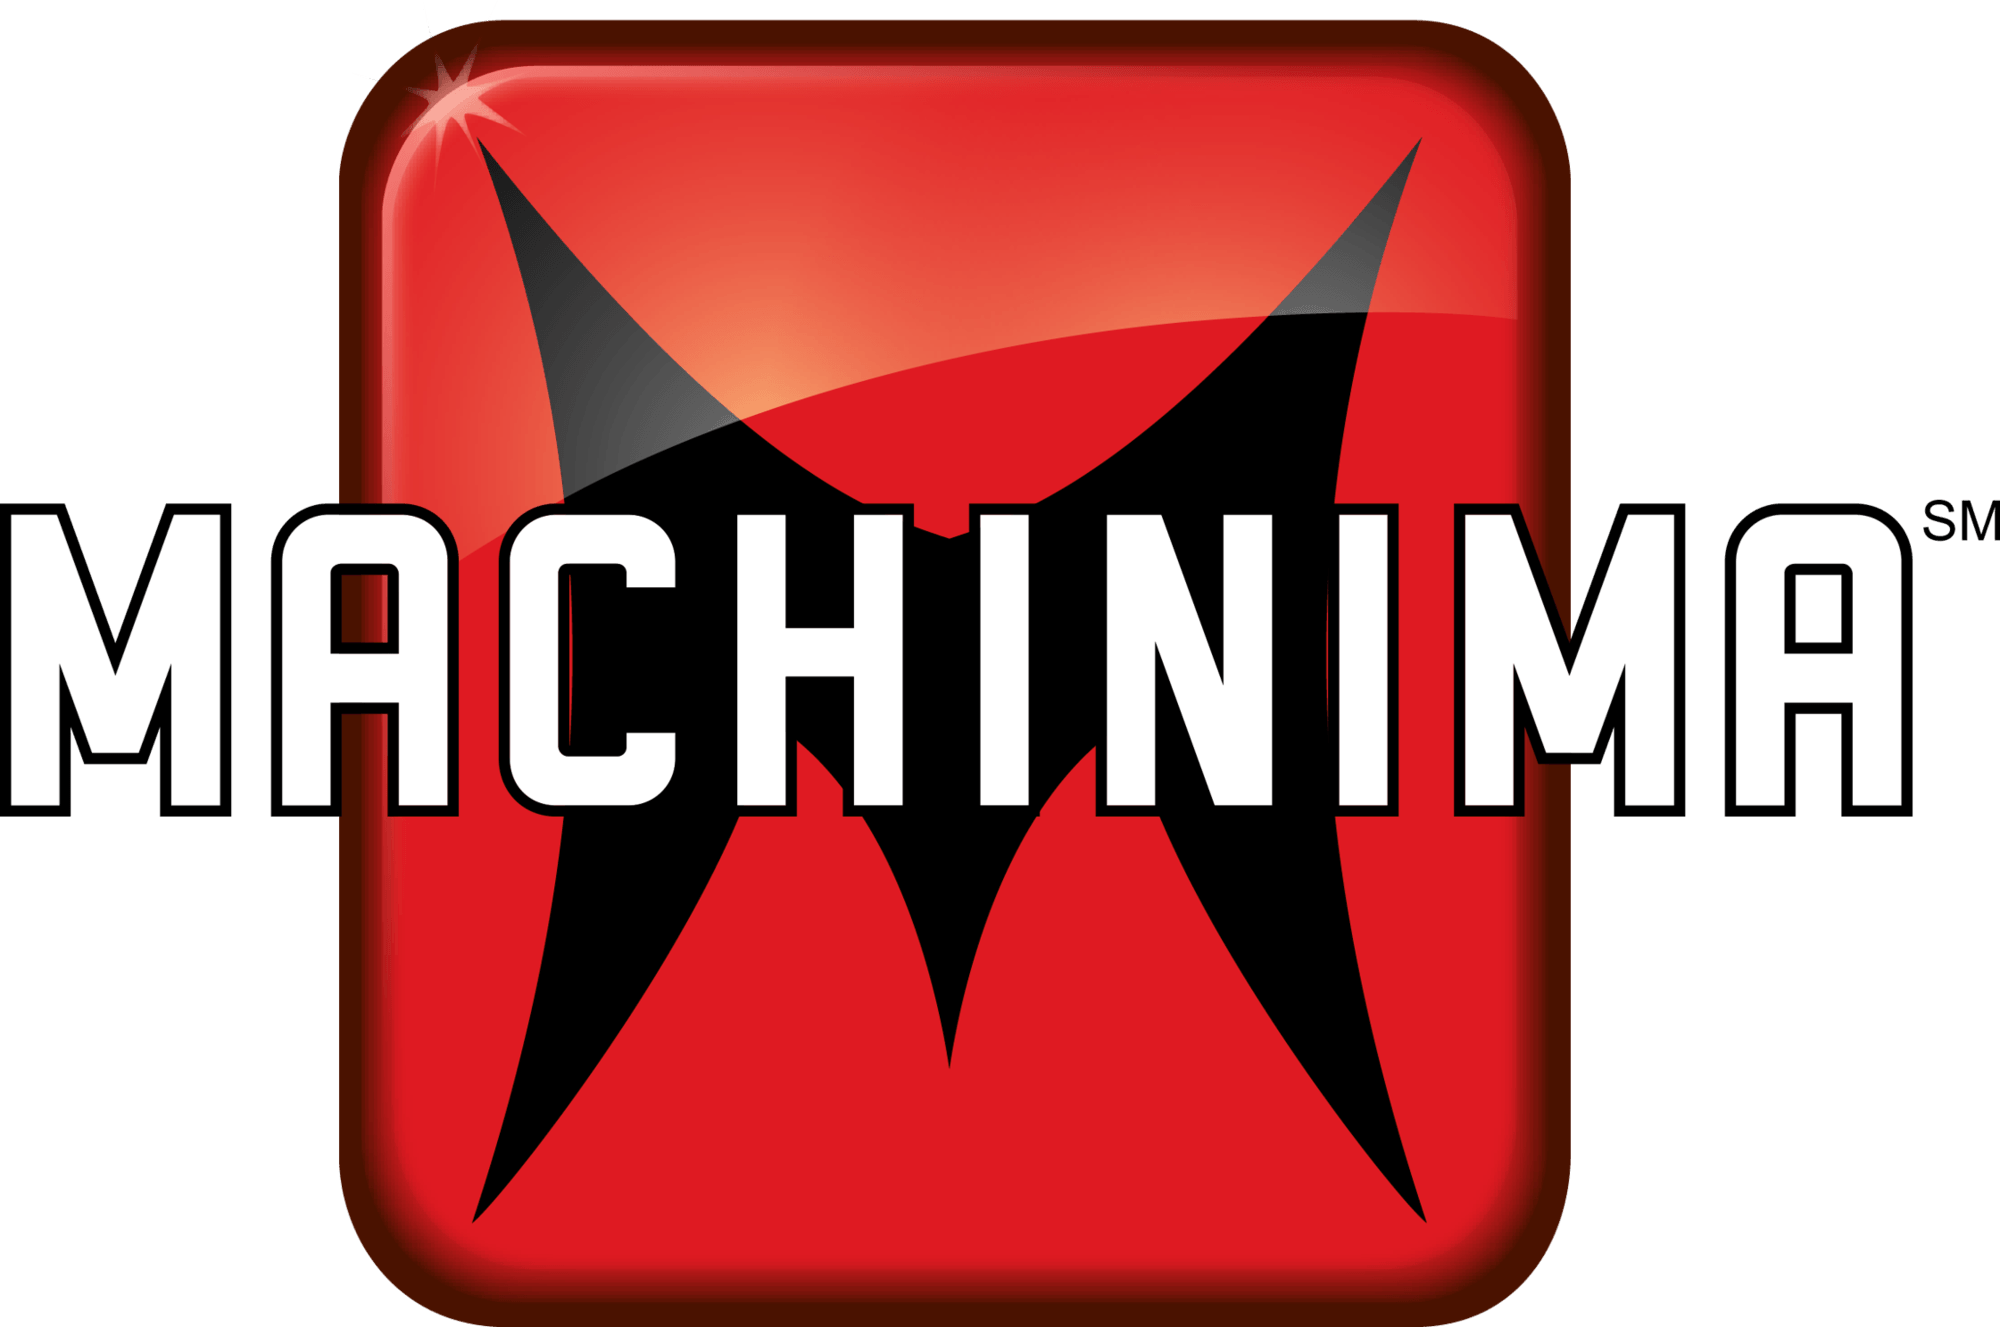 Machinima.com Logo - Machinima | Logopedia | FANDOM powered by Wikia